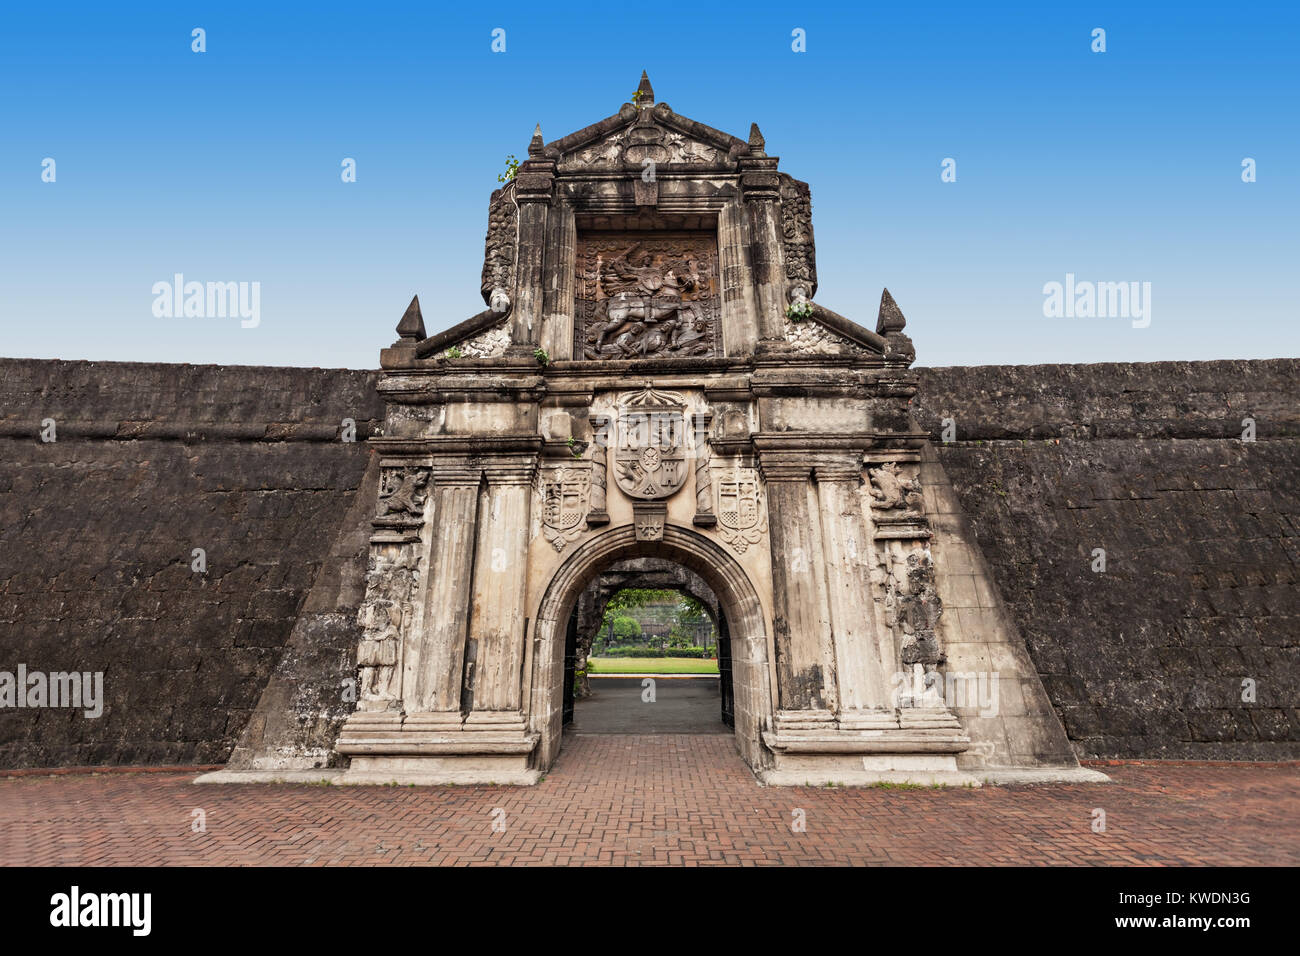 Fort Santiago in Intramuros, Manila city, Philippines Stock Photo